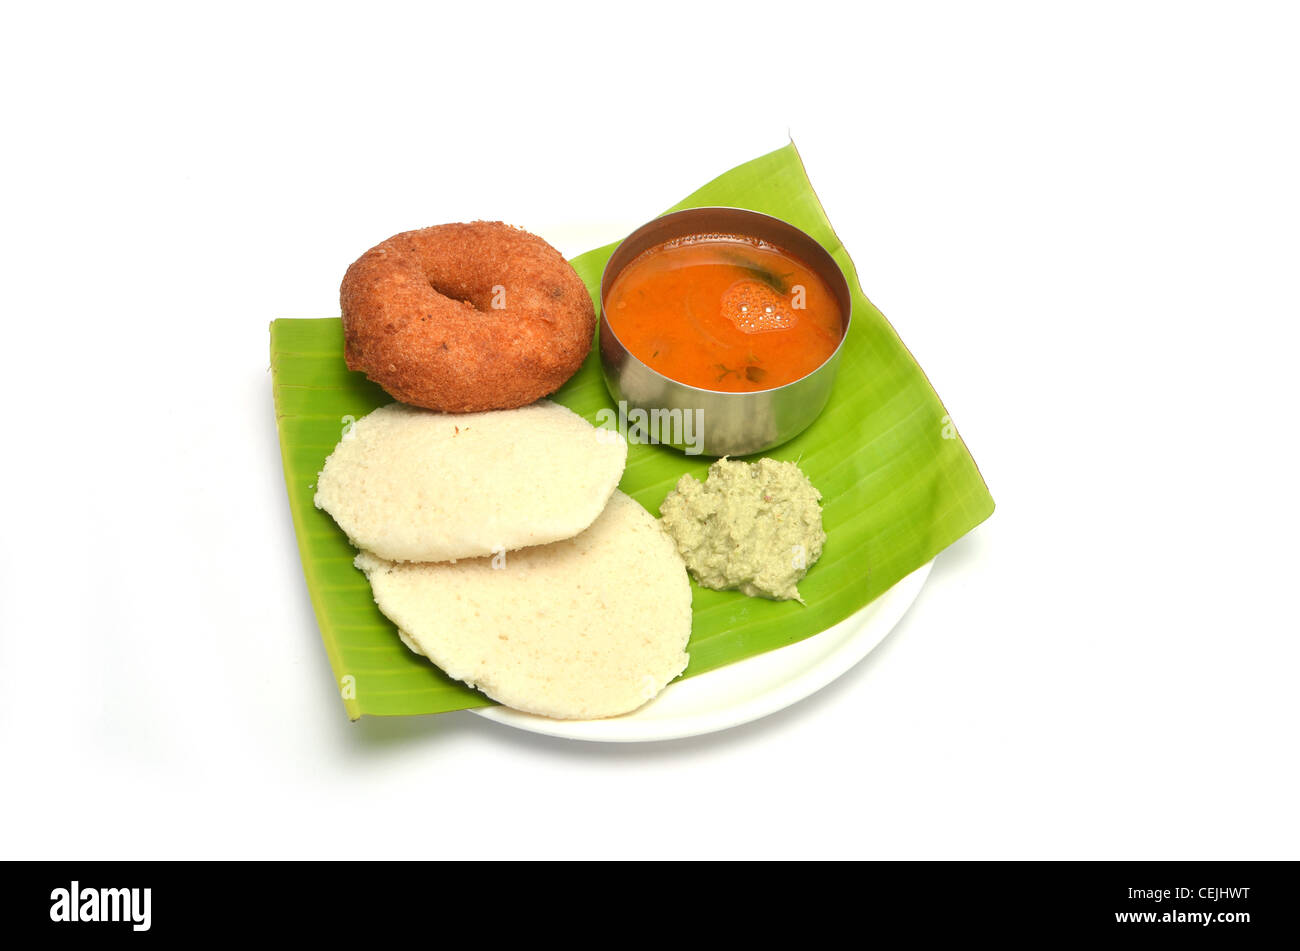 Idli, Vada, sambar et chutney, South Indian petit-déjeuner servi sur des feuilles de banane, isolé sur fond blanc Banque D'Images